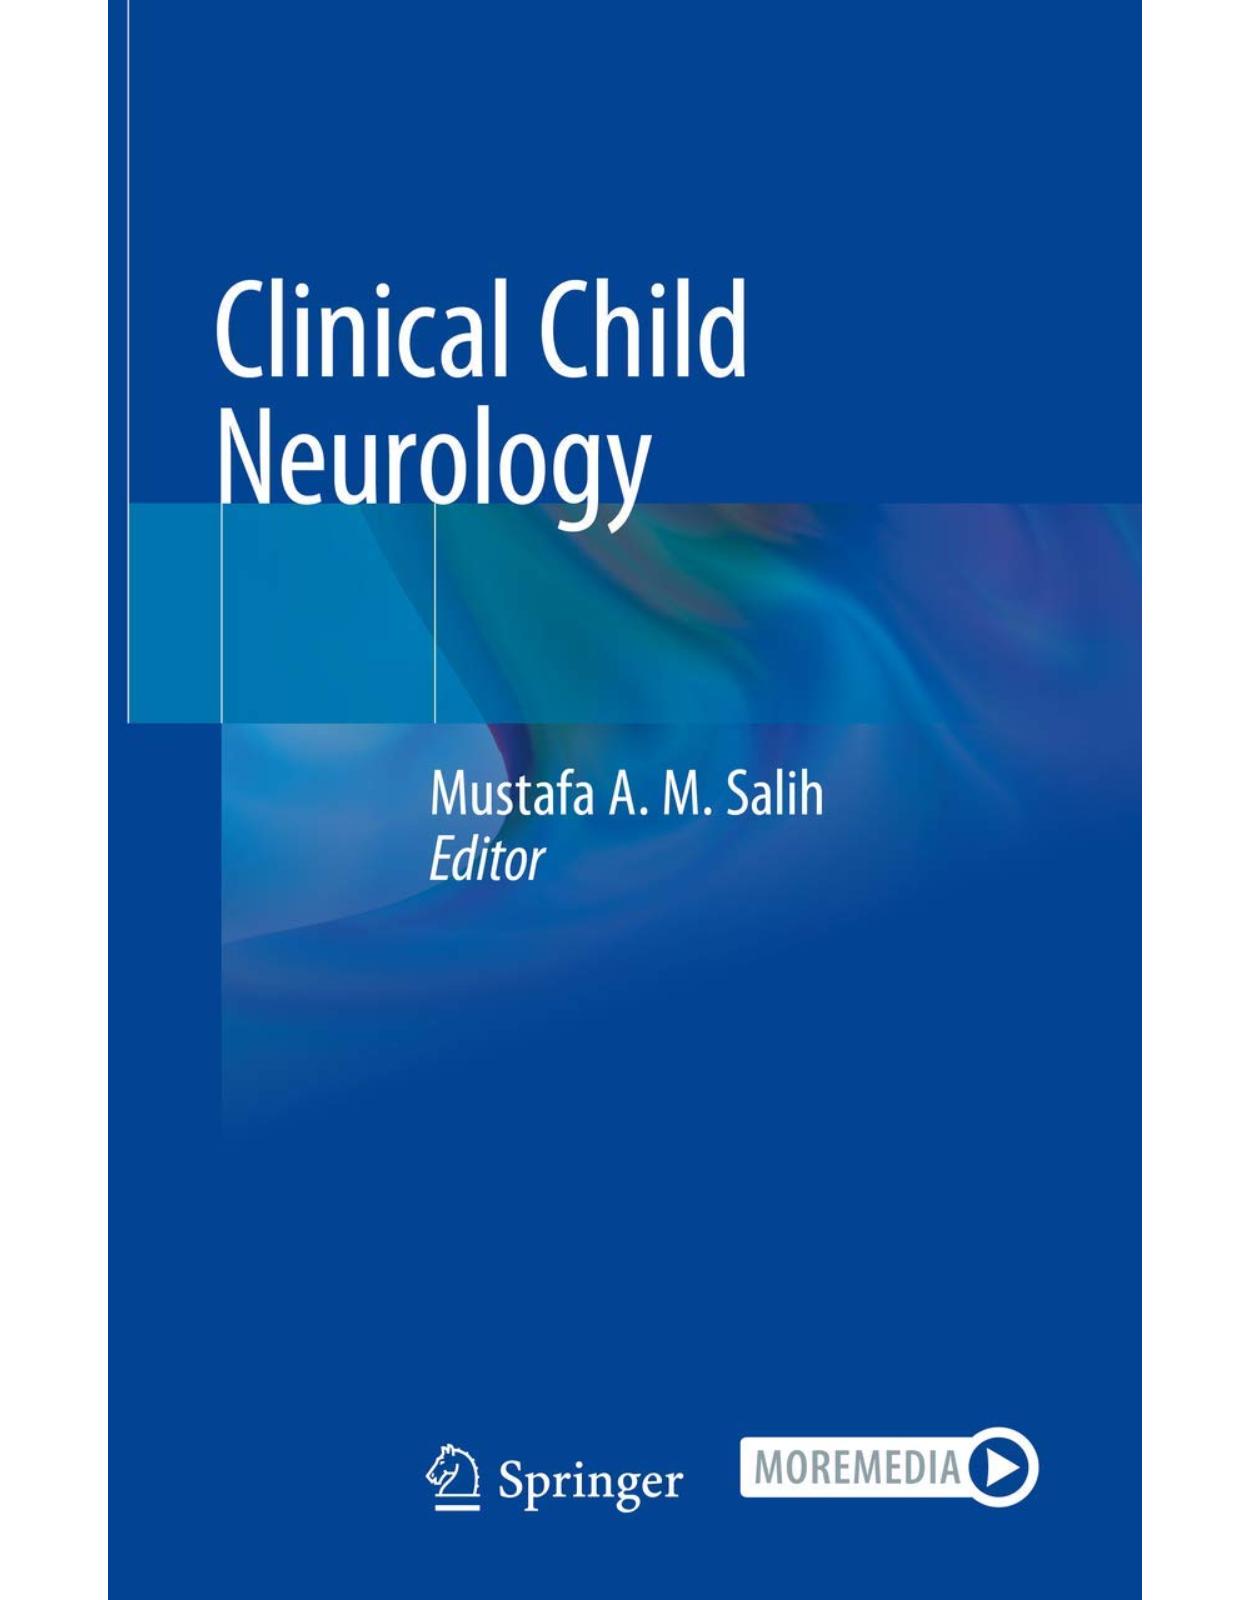 Clinical Child Neurology